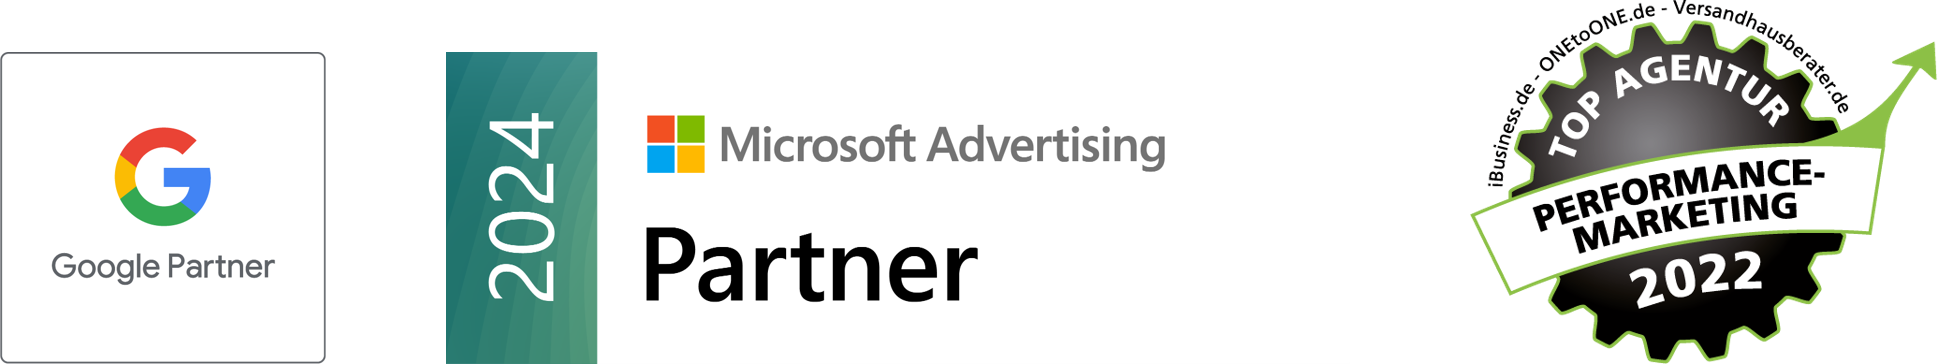 Google Partner Microsoft Advertising Partner